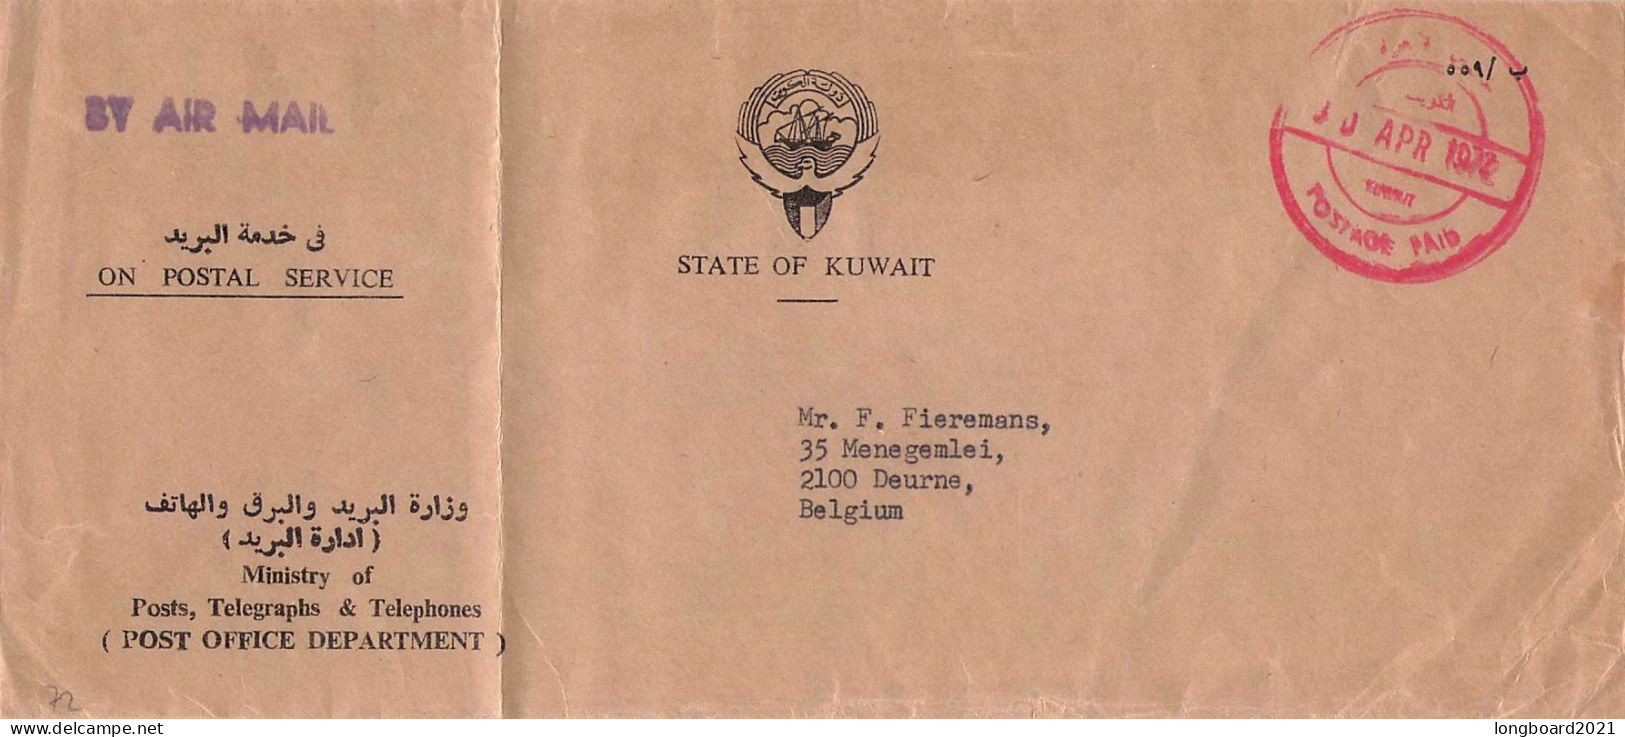 KUWAIT - ON POSTAL SERVICE 1972 - BELGIUM / 5131 - Koeweit